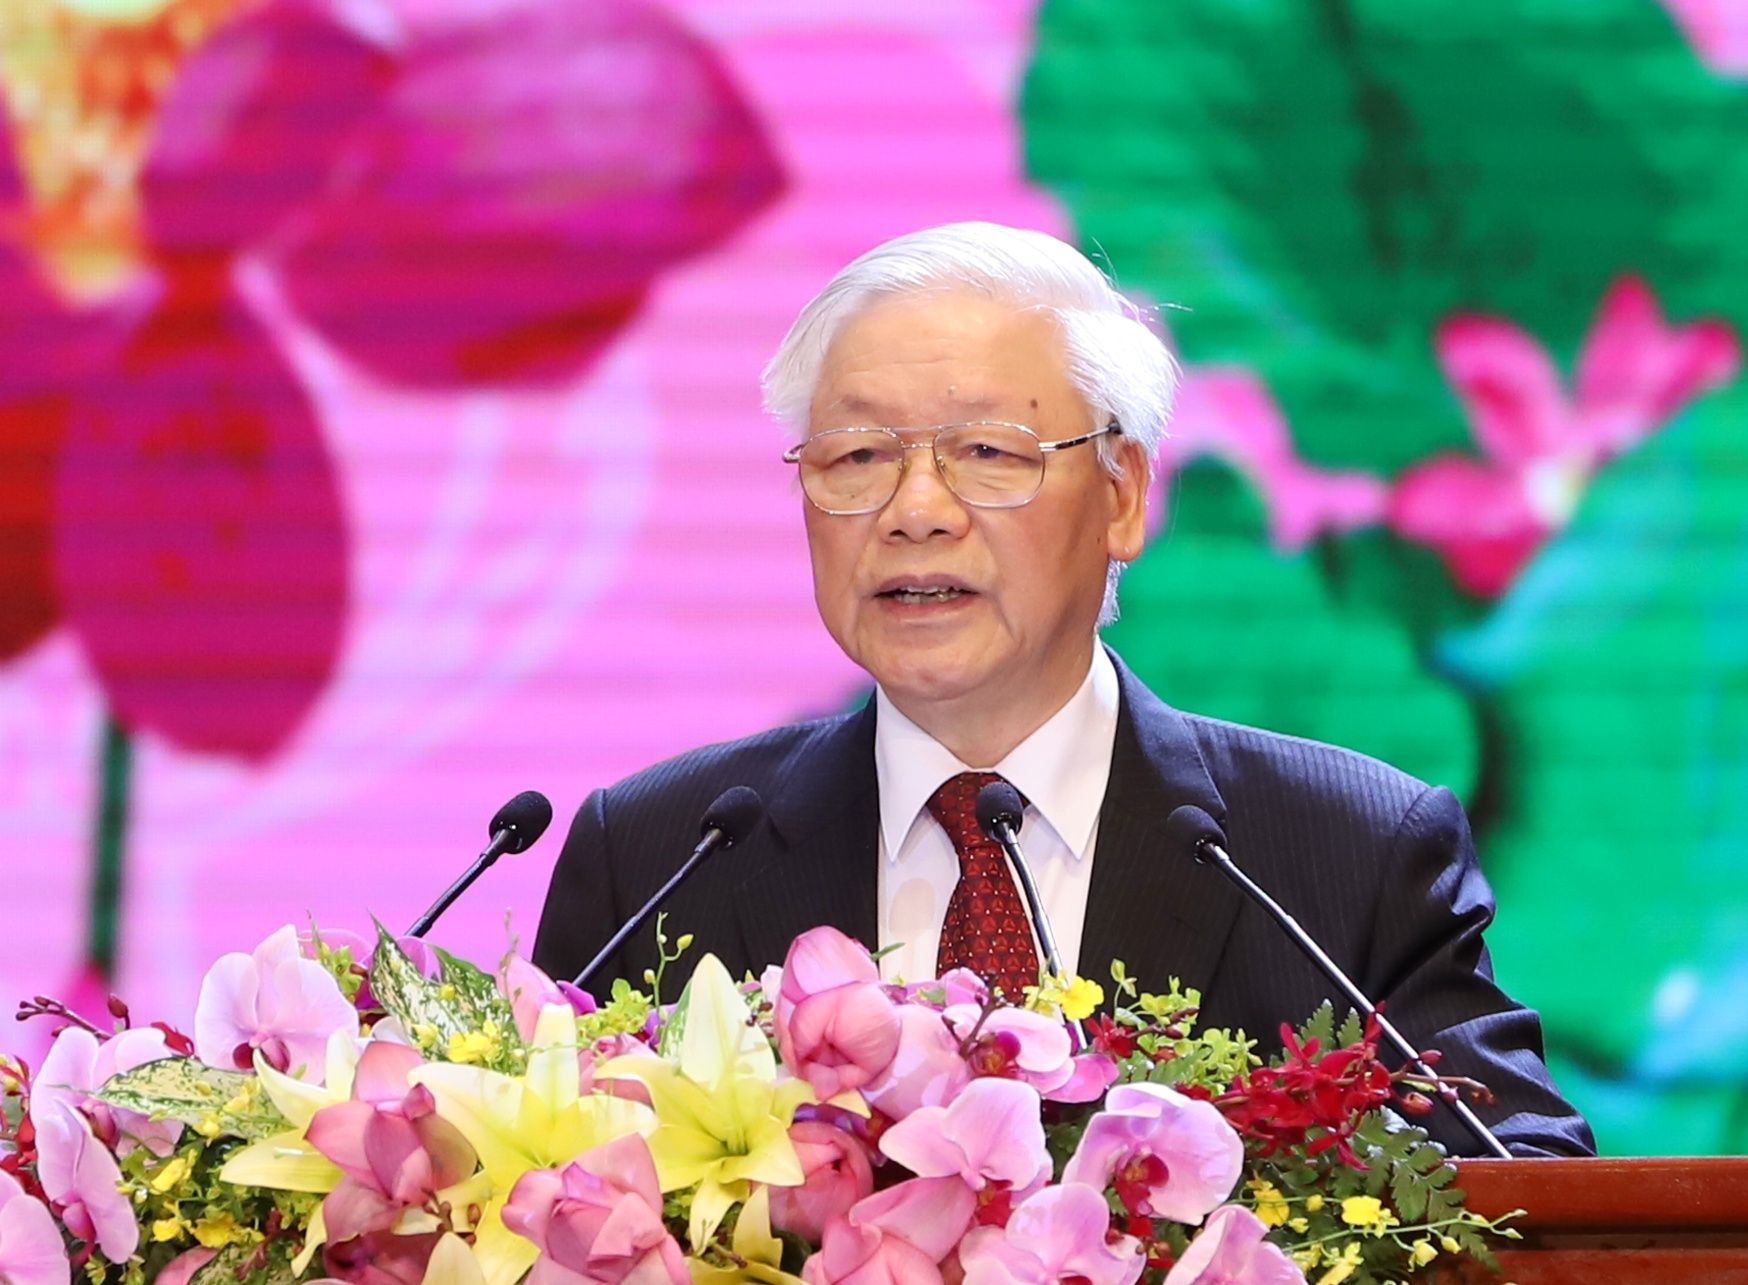 Diễn văn của Tổng Bí thư, Chủ tịch nước Nguyễn Phú Trọng tại Lễ kỷ niệm 130 năm Ngày sinh Chủ tịch Hồ Chí Minh